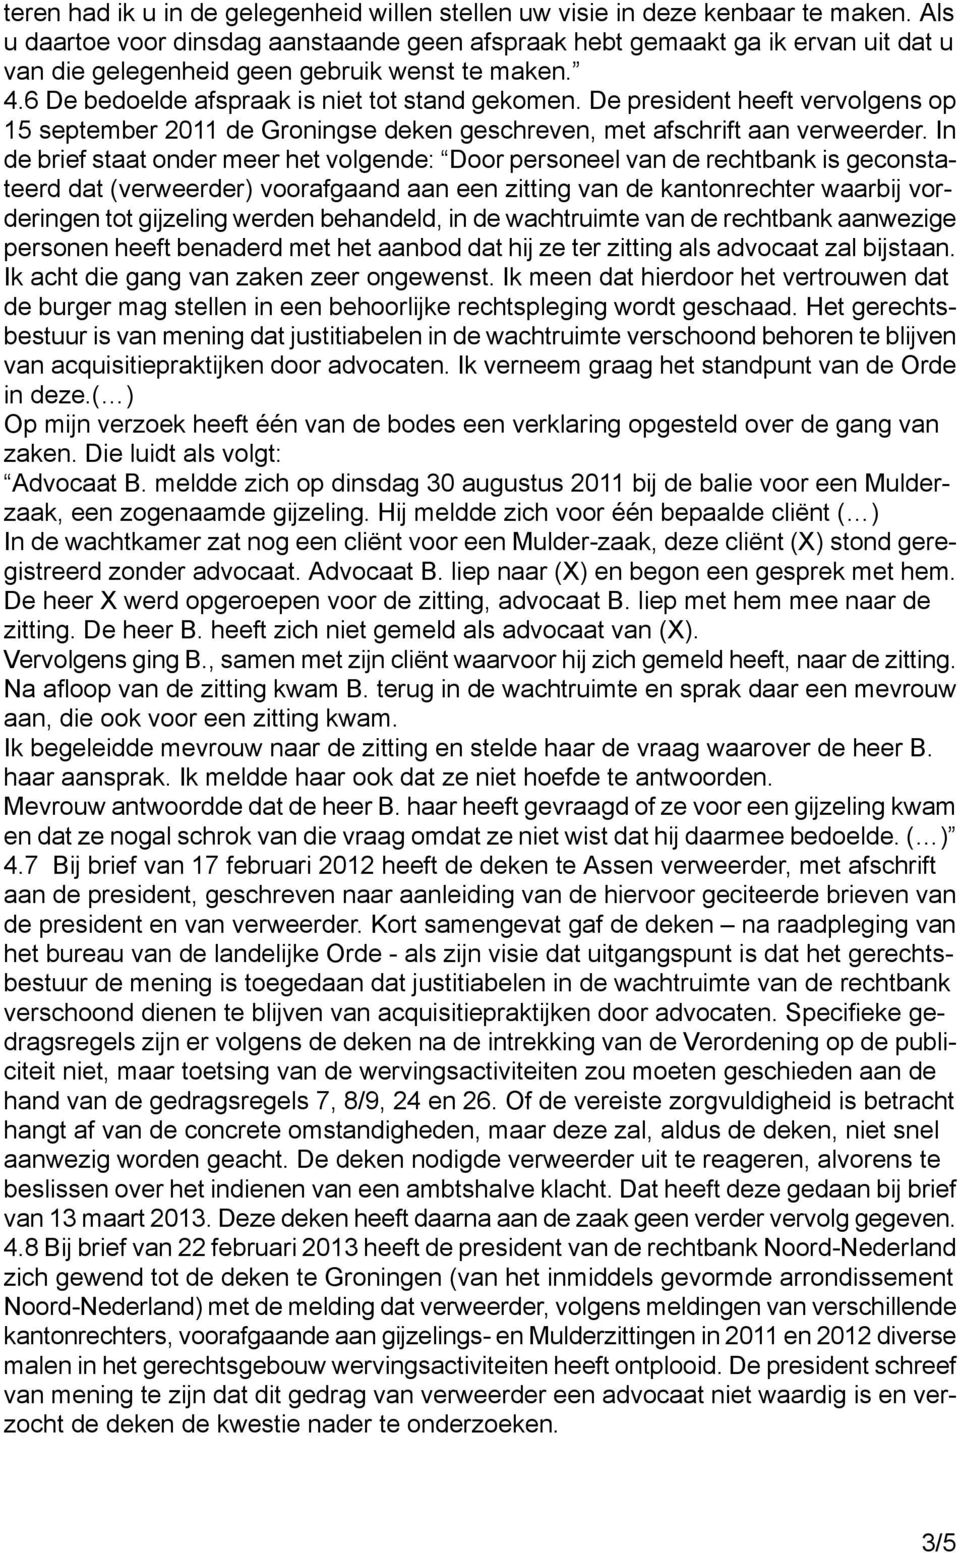 De president heeft vervolgens op 15 september 2011 de Groningse deken geschreven, met afschrift aan verweerder.